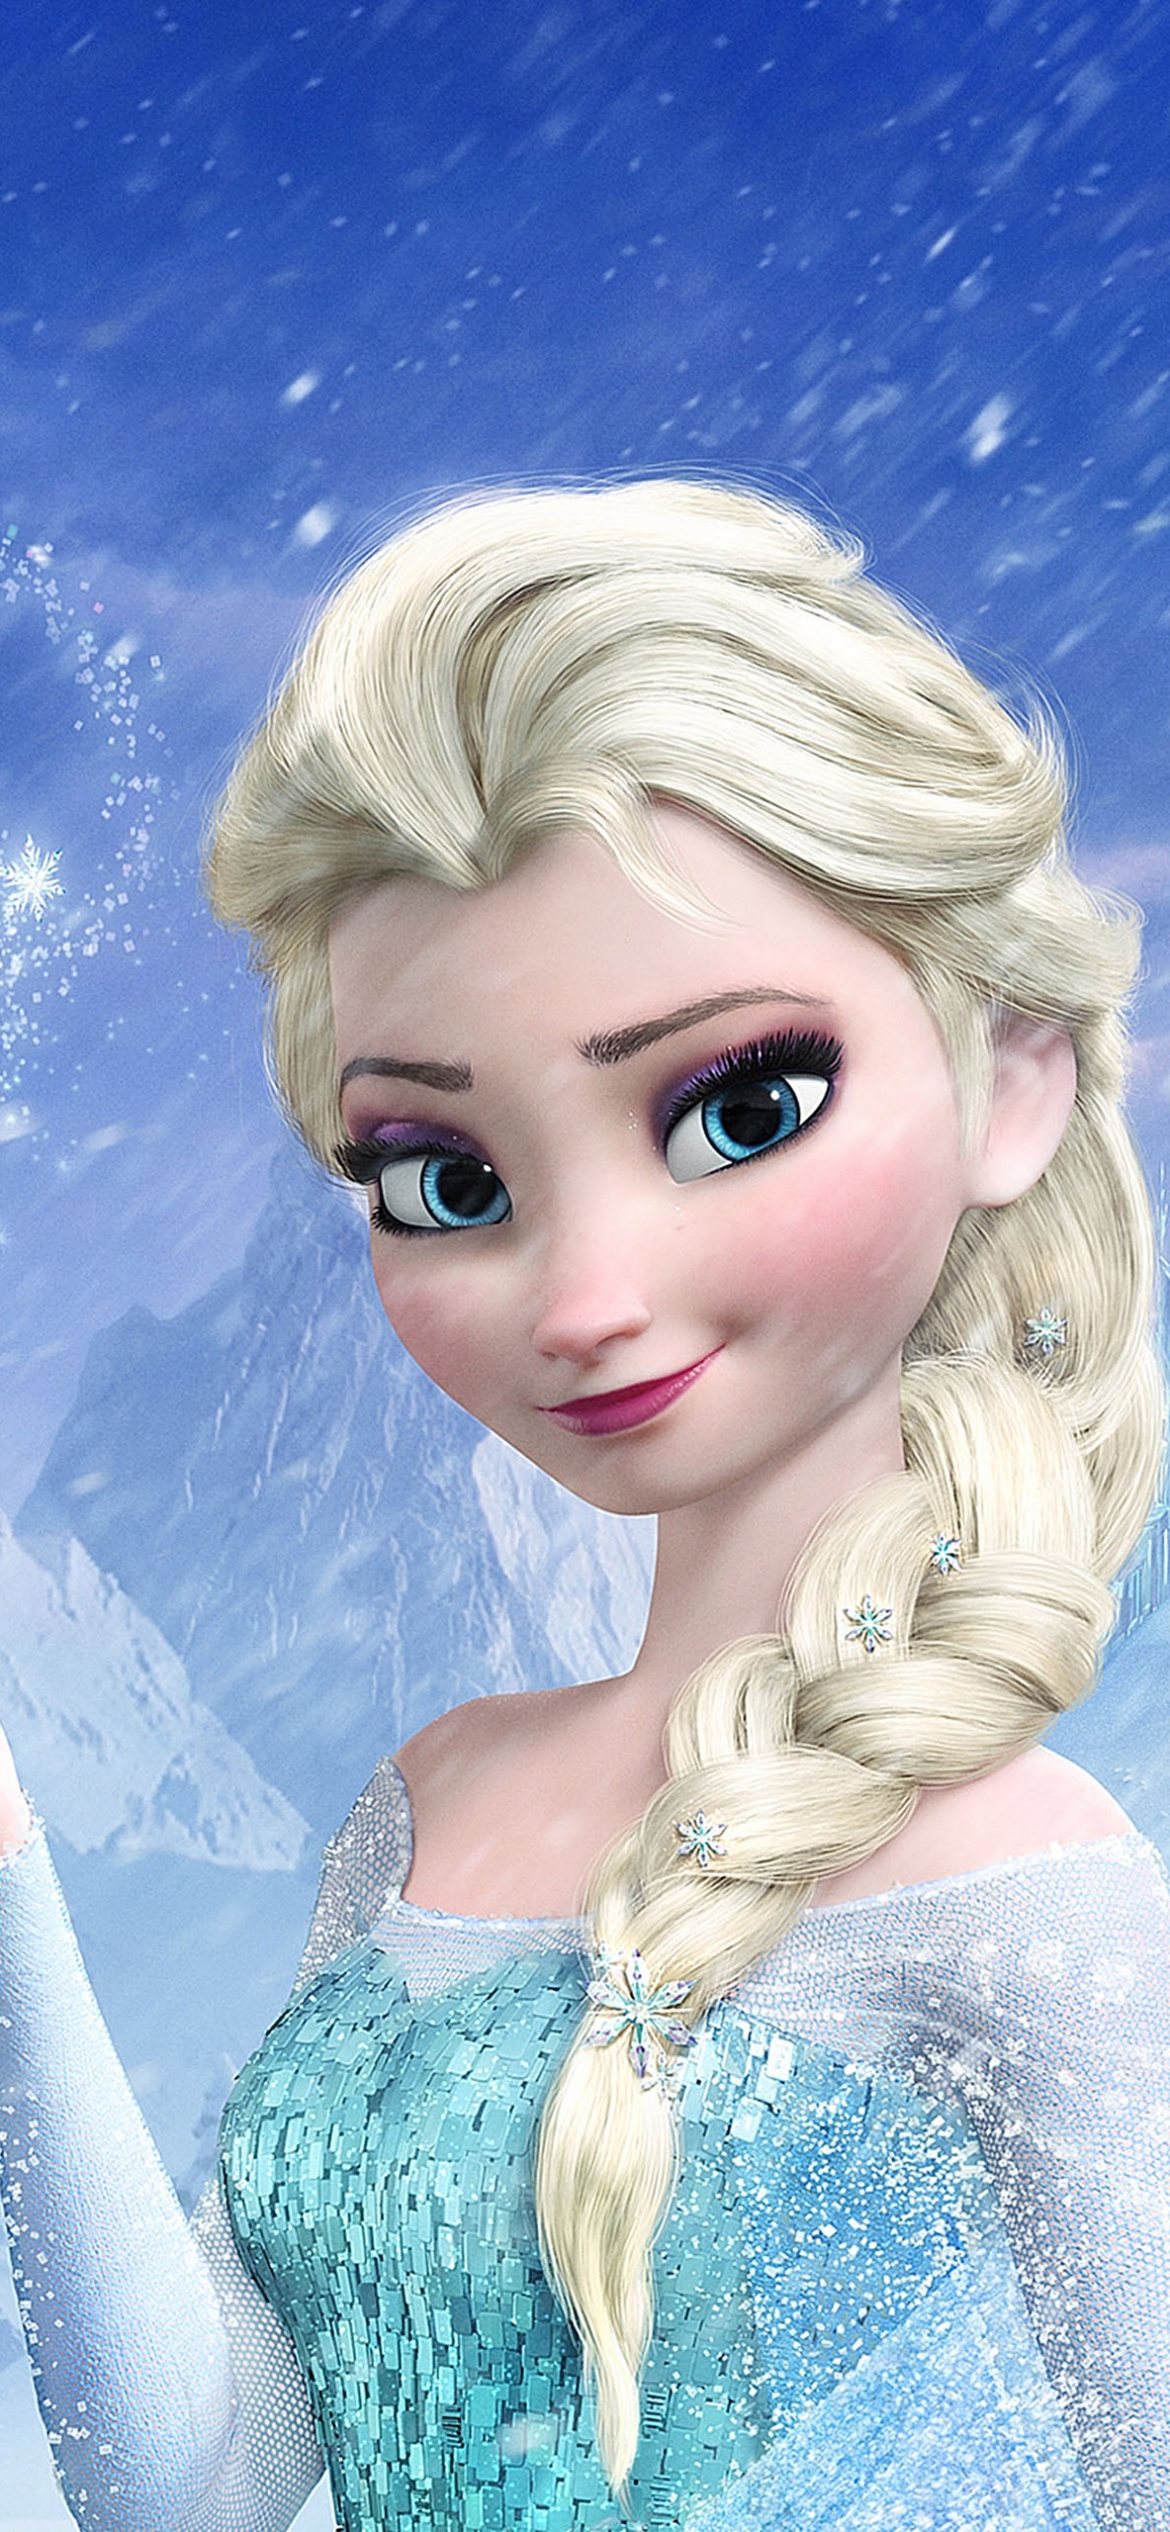 Download Queen Elsa from Frozen Wallpaper 